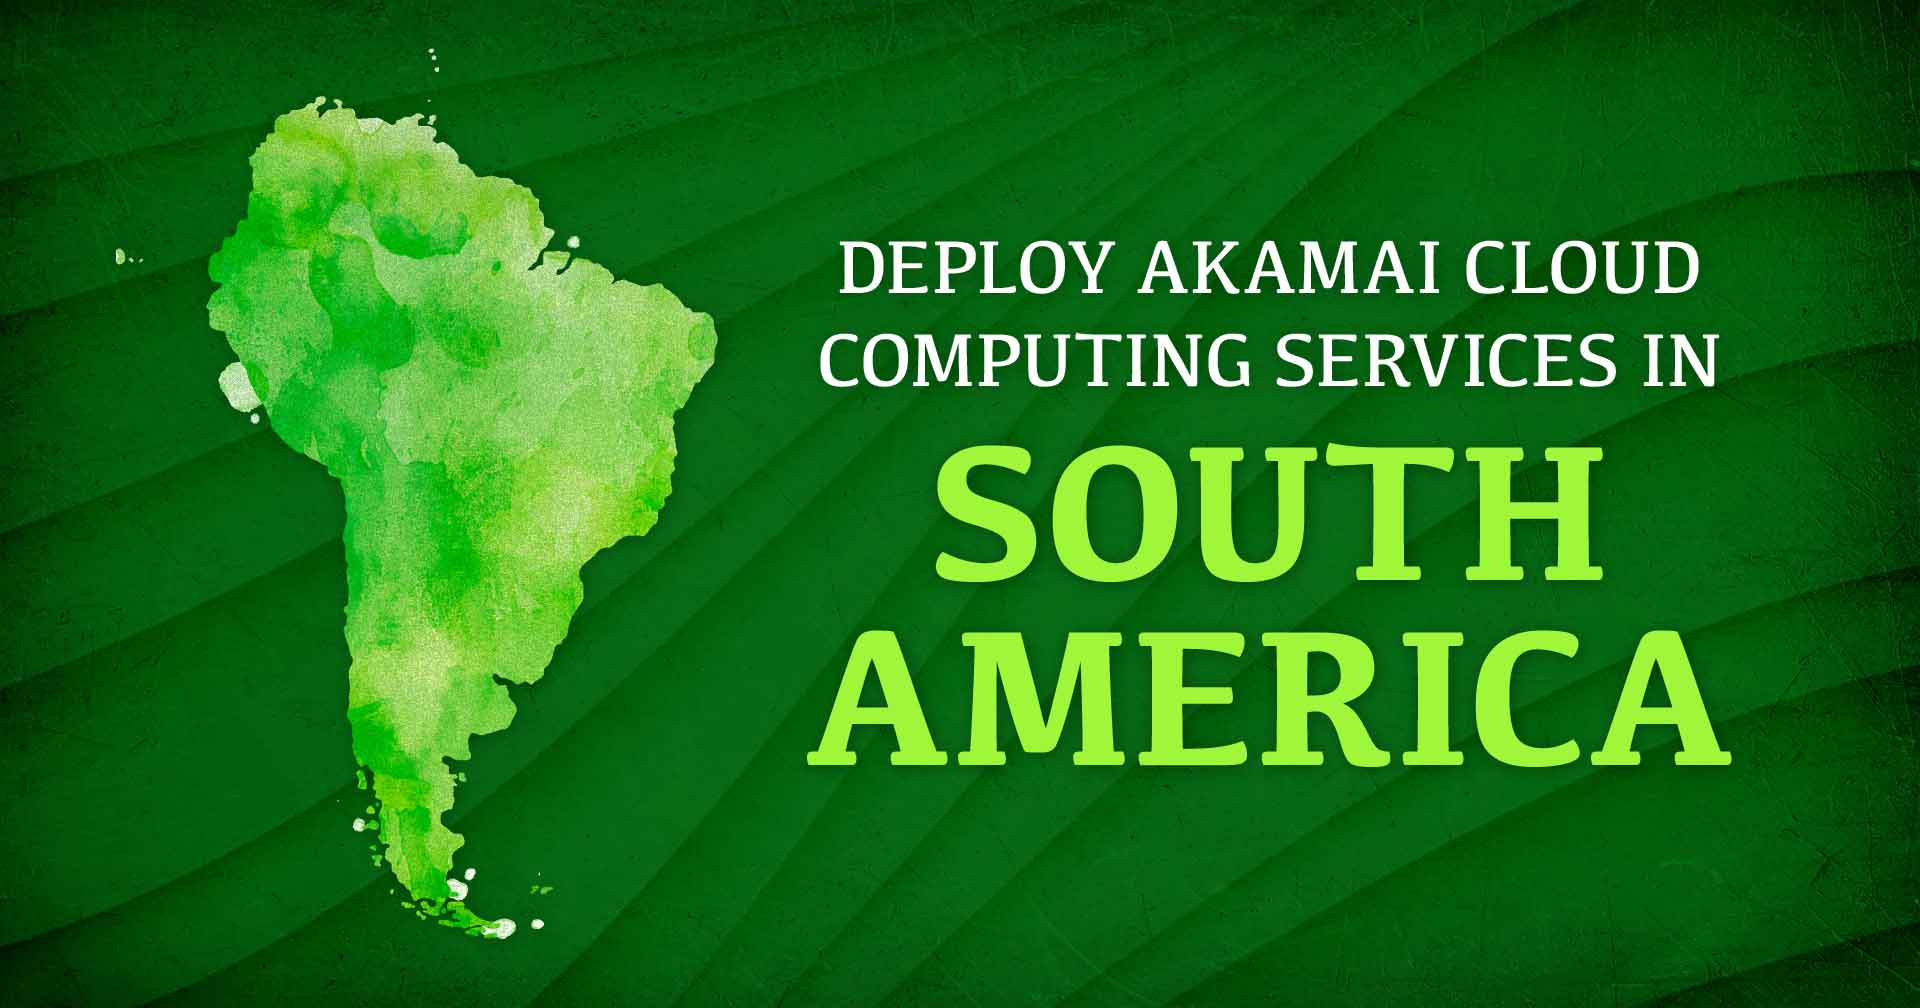 Representação da imagem da América do Sul ao lado do texto Deploy Akamai Cloud Computing Services in South America (Implantar serviços de computação em nuvem da Akamai na América do Sul).